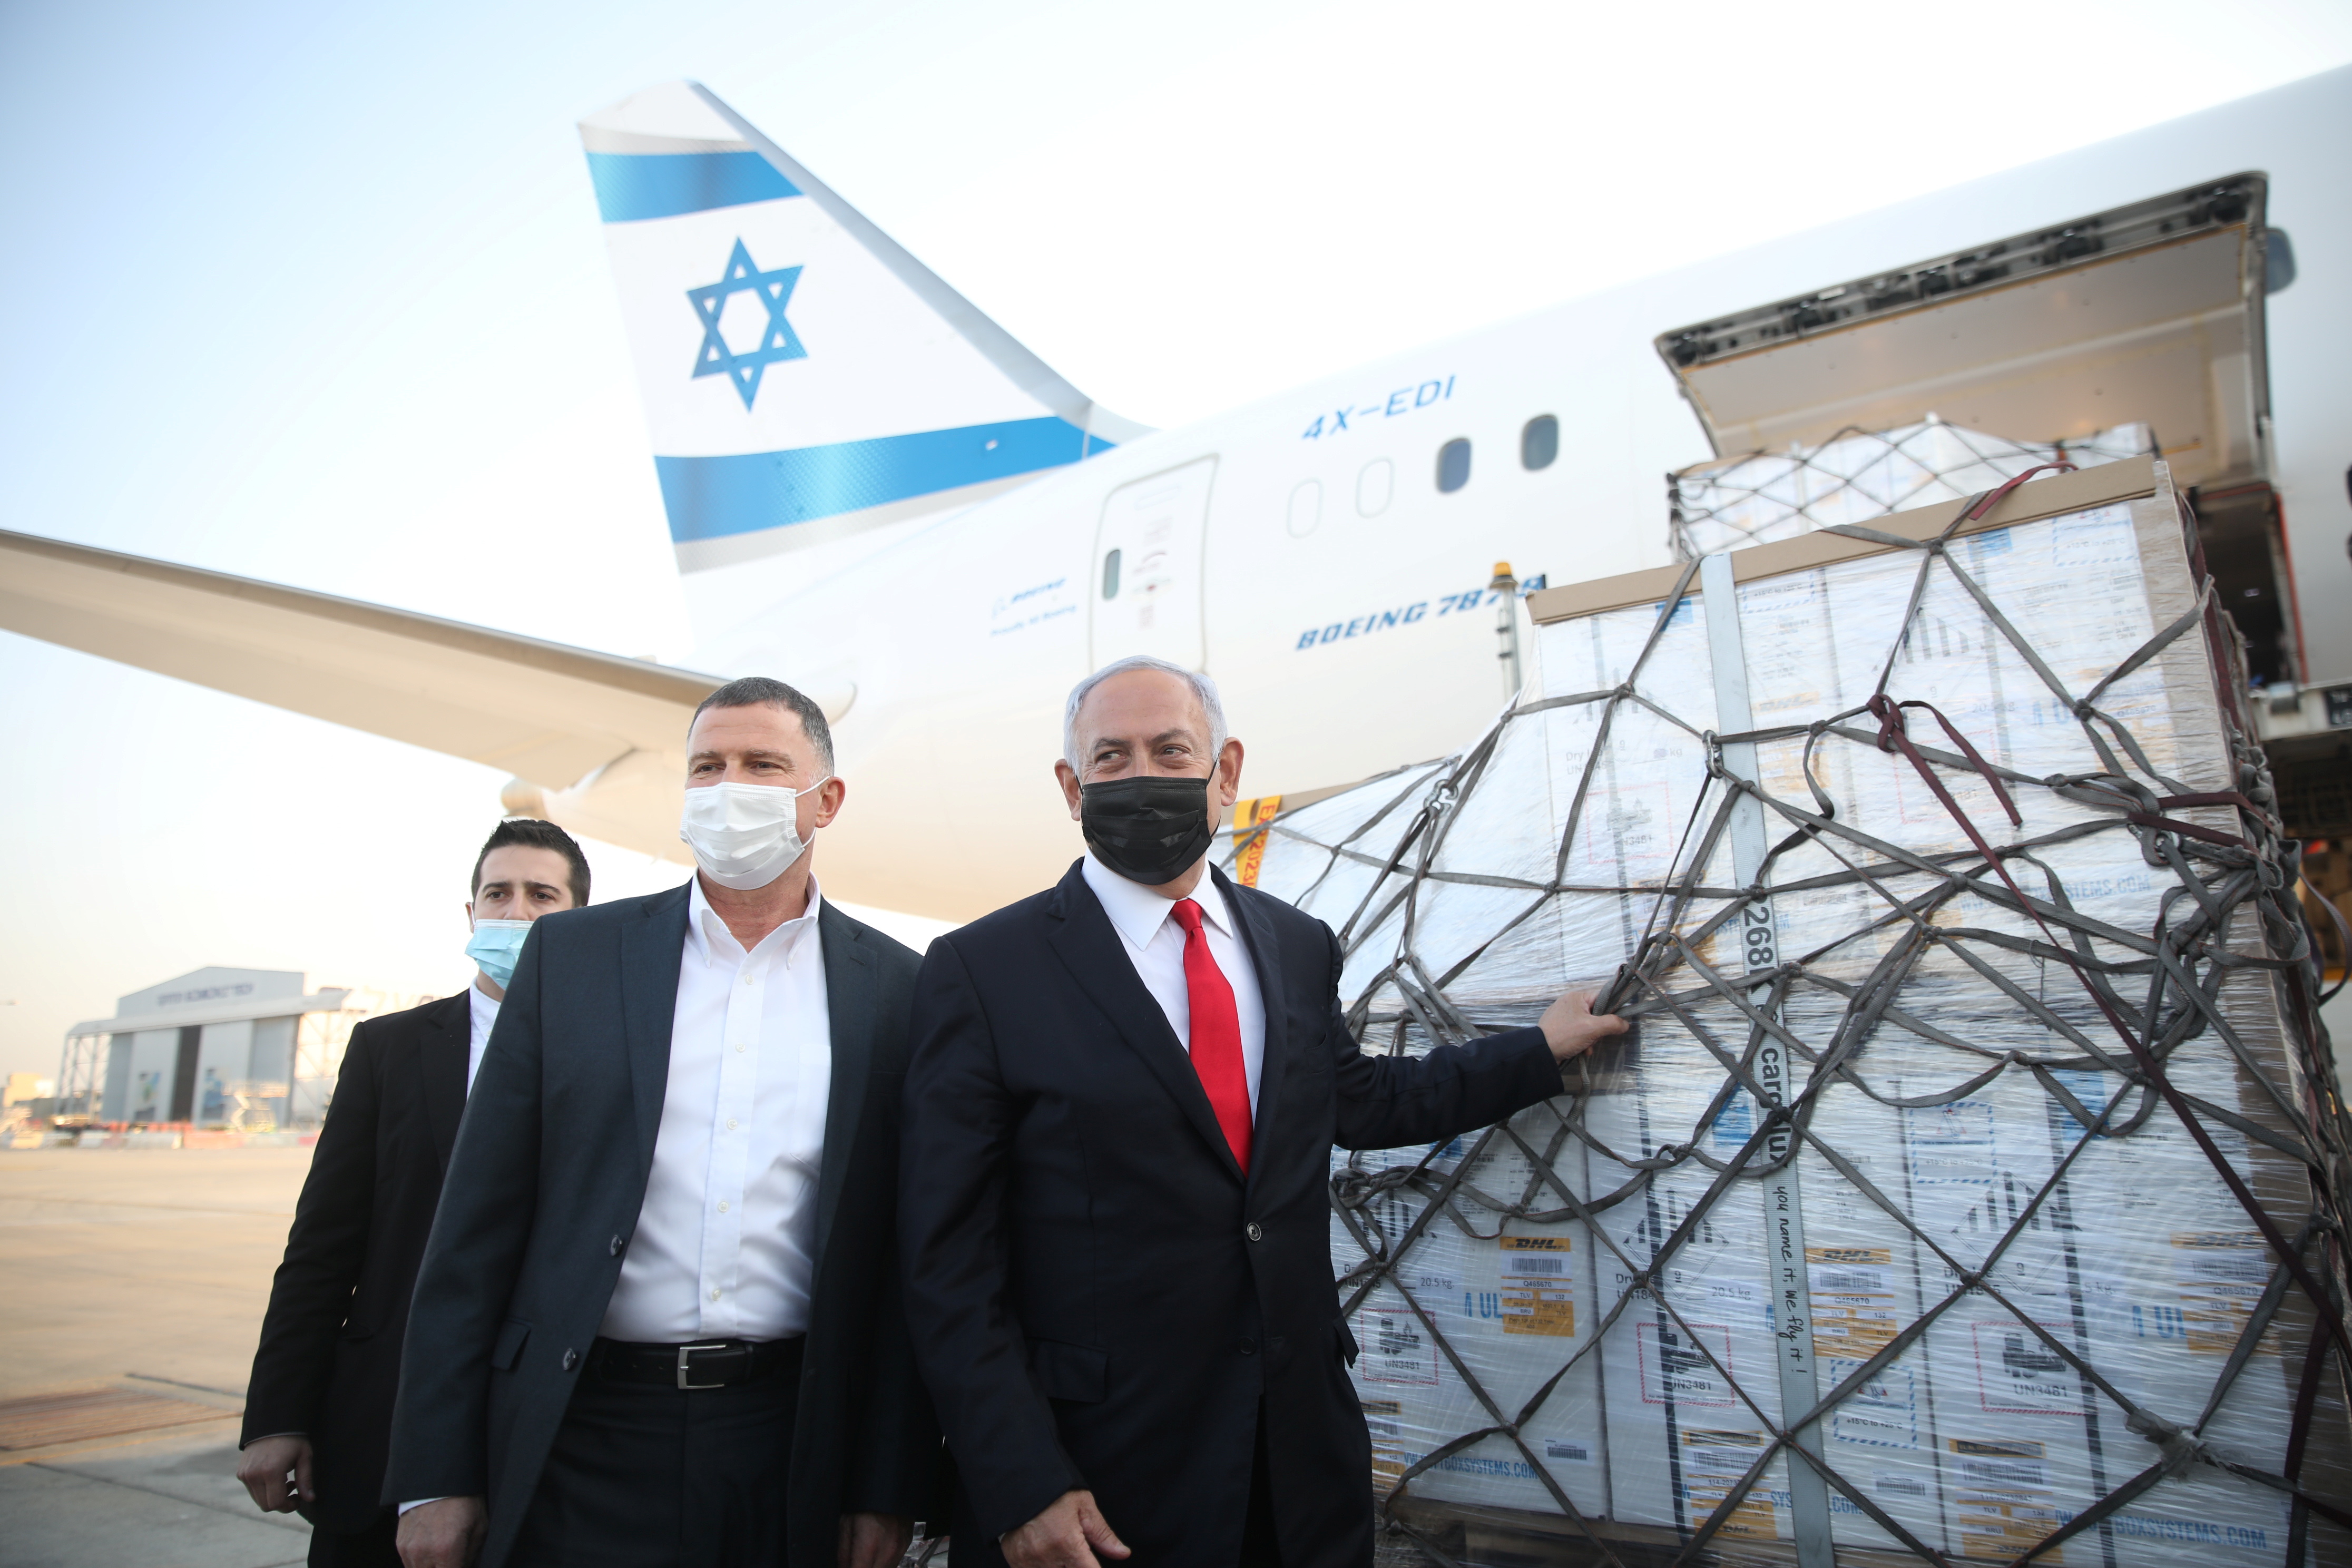 El Primer Ministro de Israel Benjamin Netanyahu y el Ministro de Salud Yuli Edelstein asisten a la llegada de un avión con un cargamento de vacunas contra la enfermedad coronavirus Pfizer-BioNTech (COVID-19), al aeropuerto Ben Gurion, cerca de la ciudad de Lod, Israel, el 10 de enero de 2021. (REUTERS)